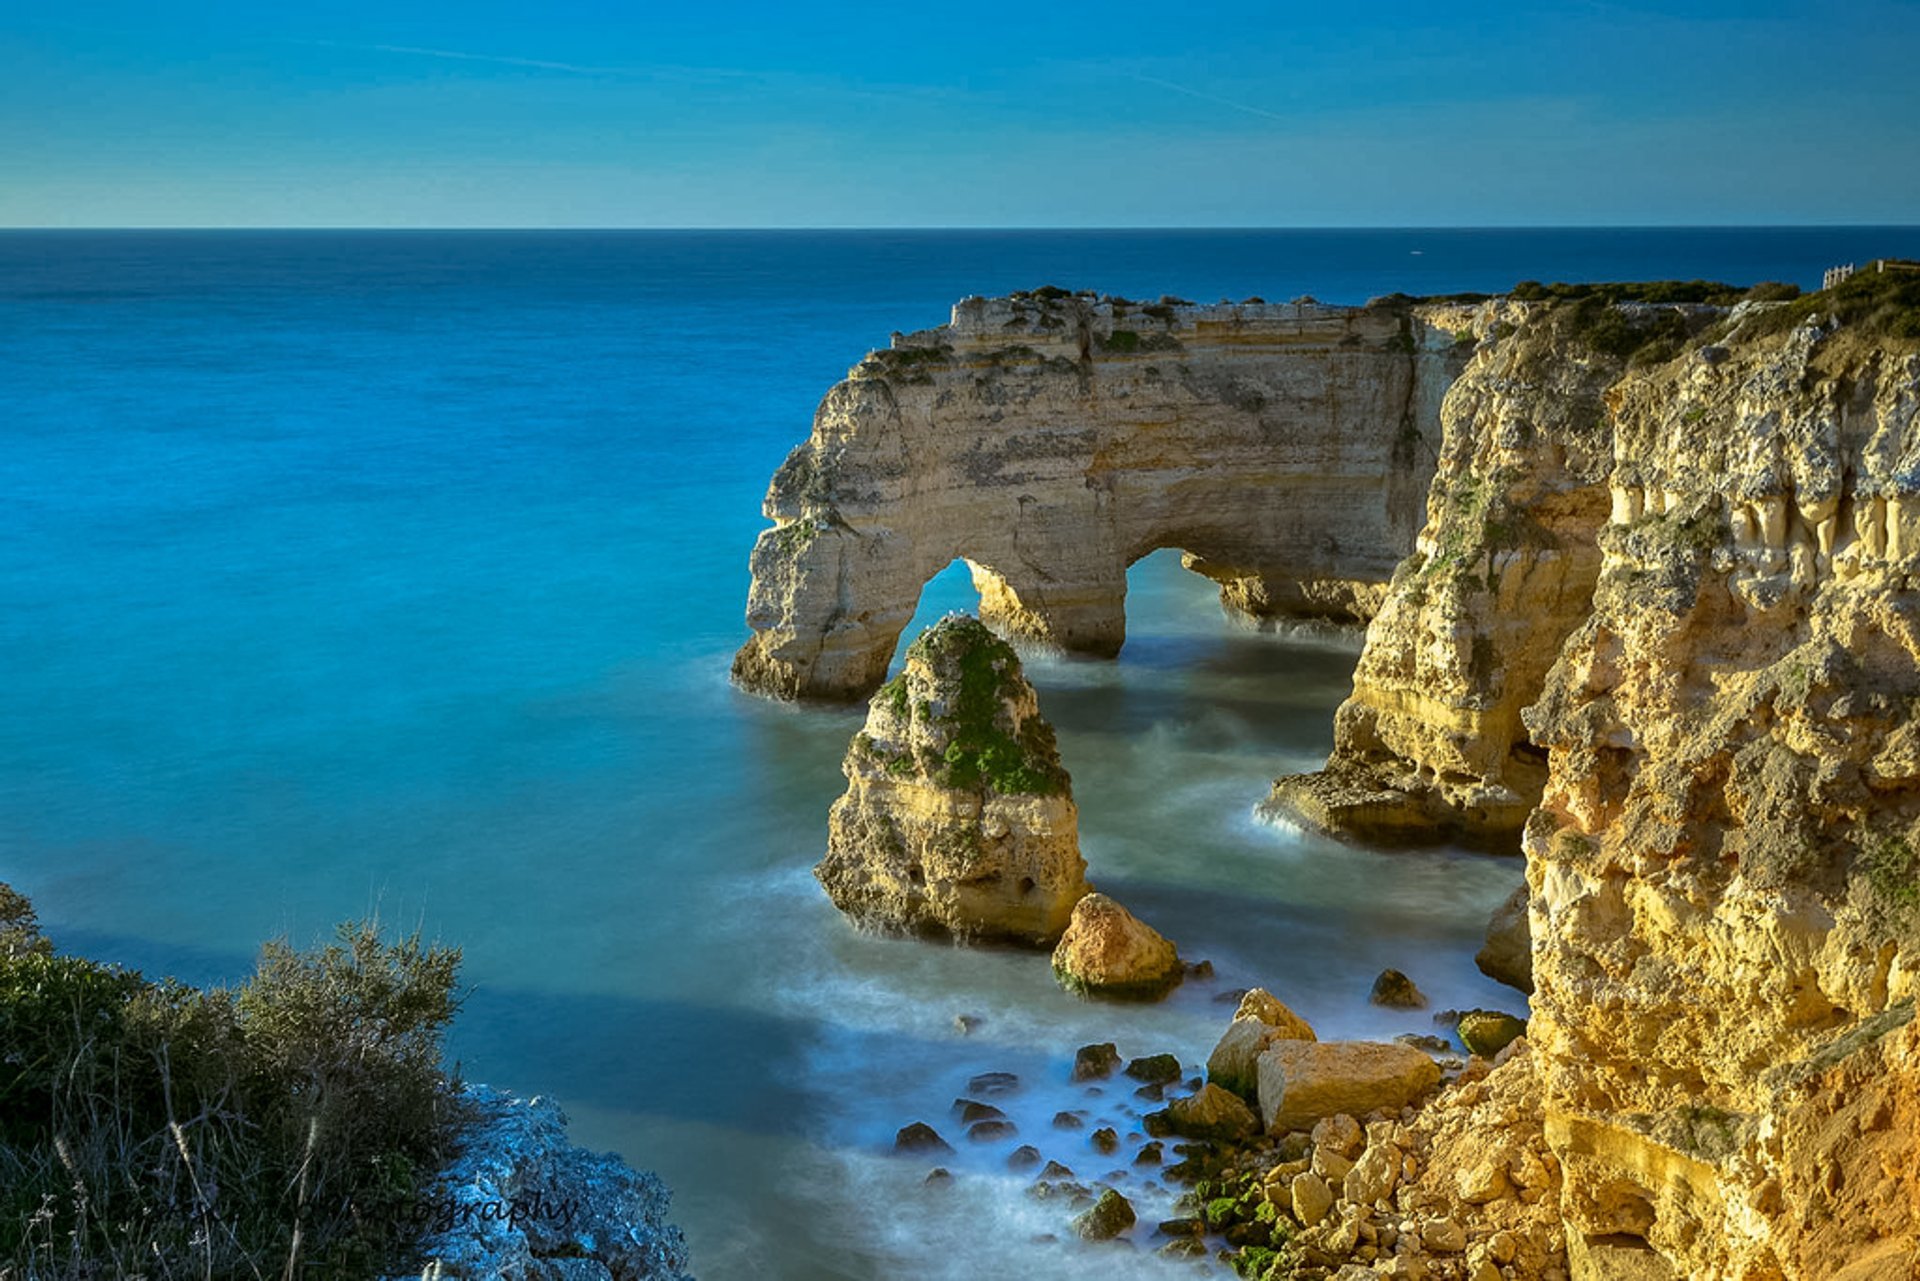 The Algarve Beaches